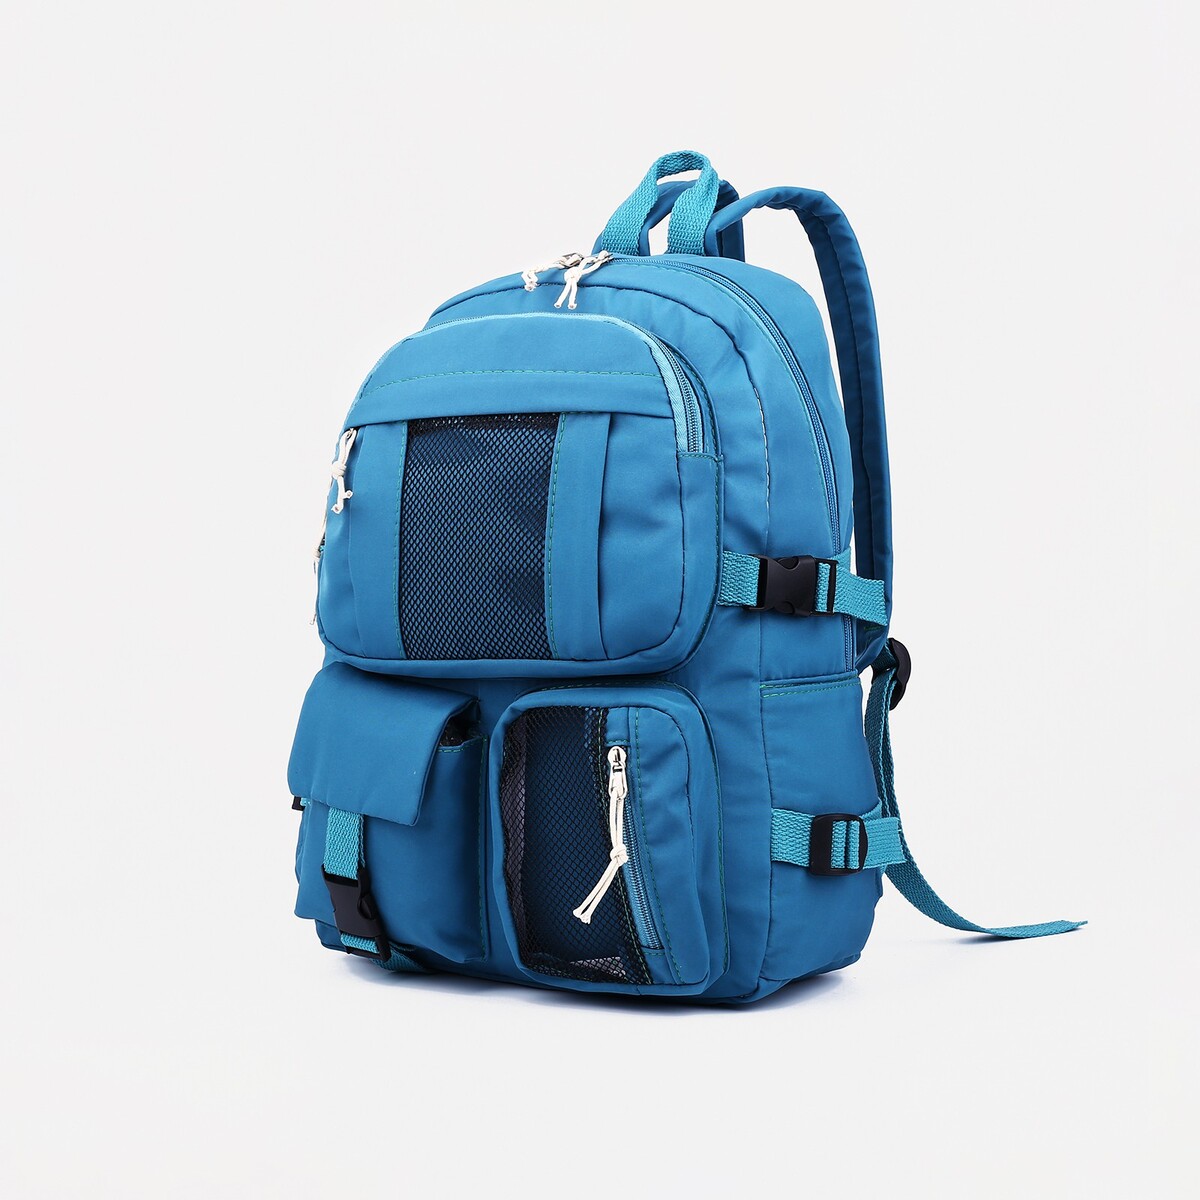 Рюкзак школьный на молнии, 5 наружных карманов, цвет синий рюкзак туристический на молнии 5 наружных карманов синий